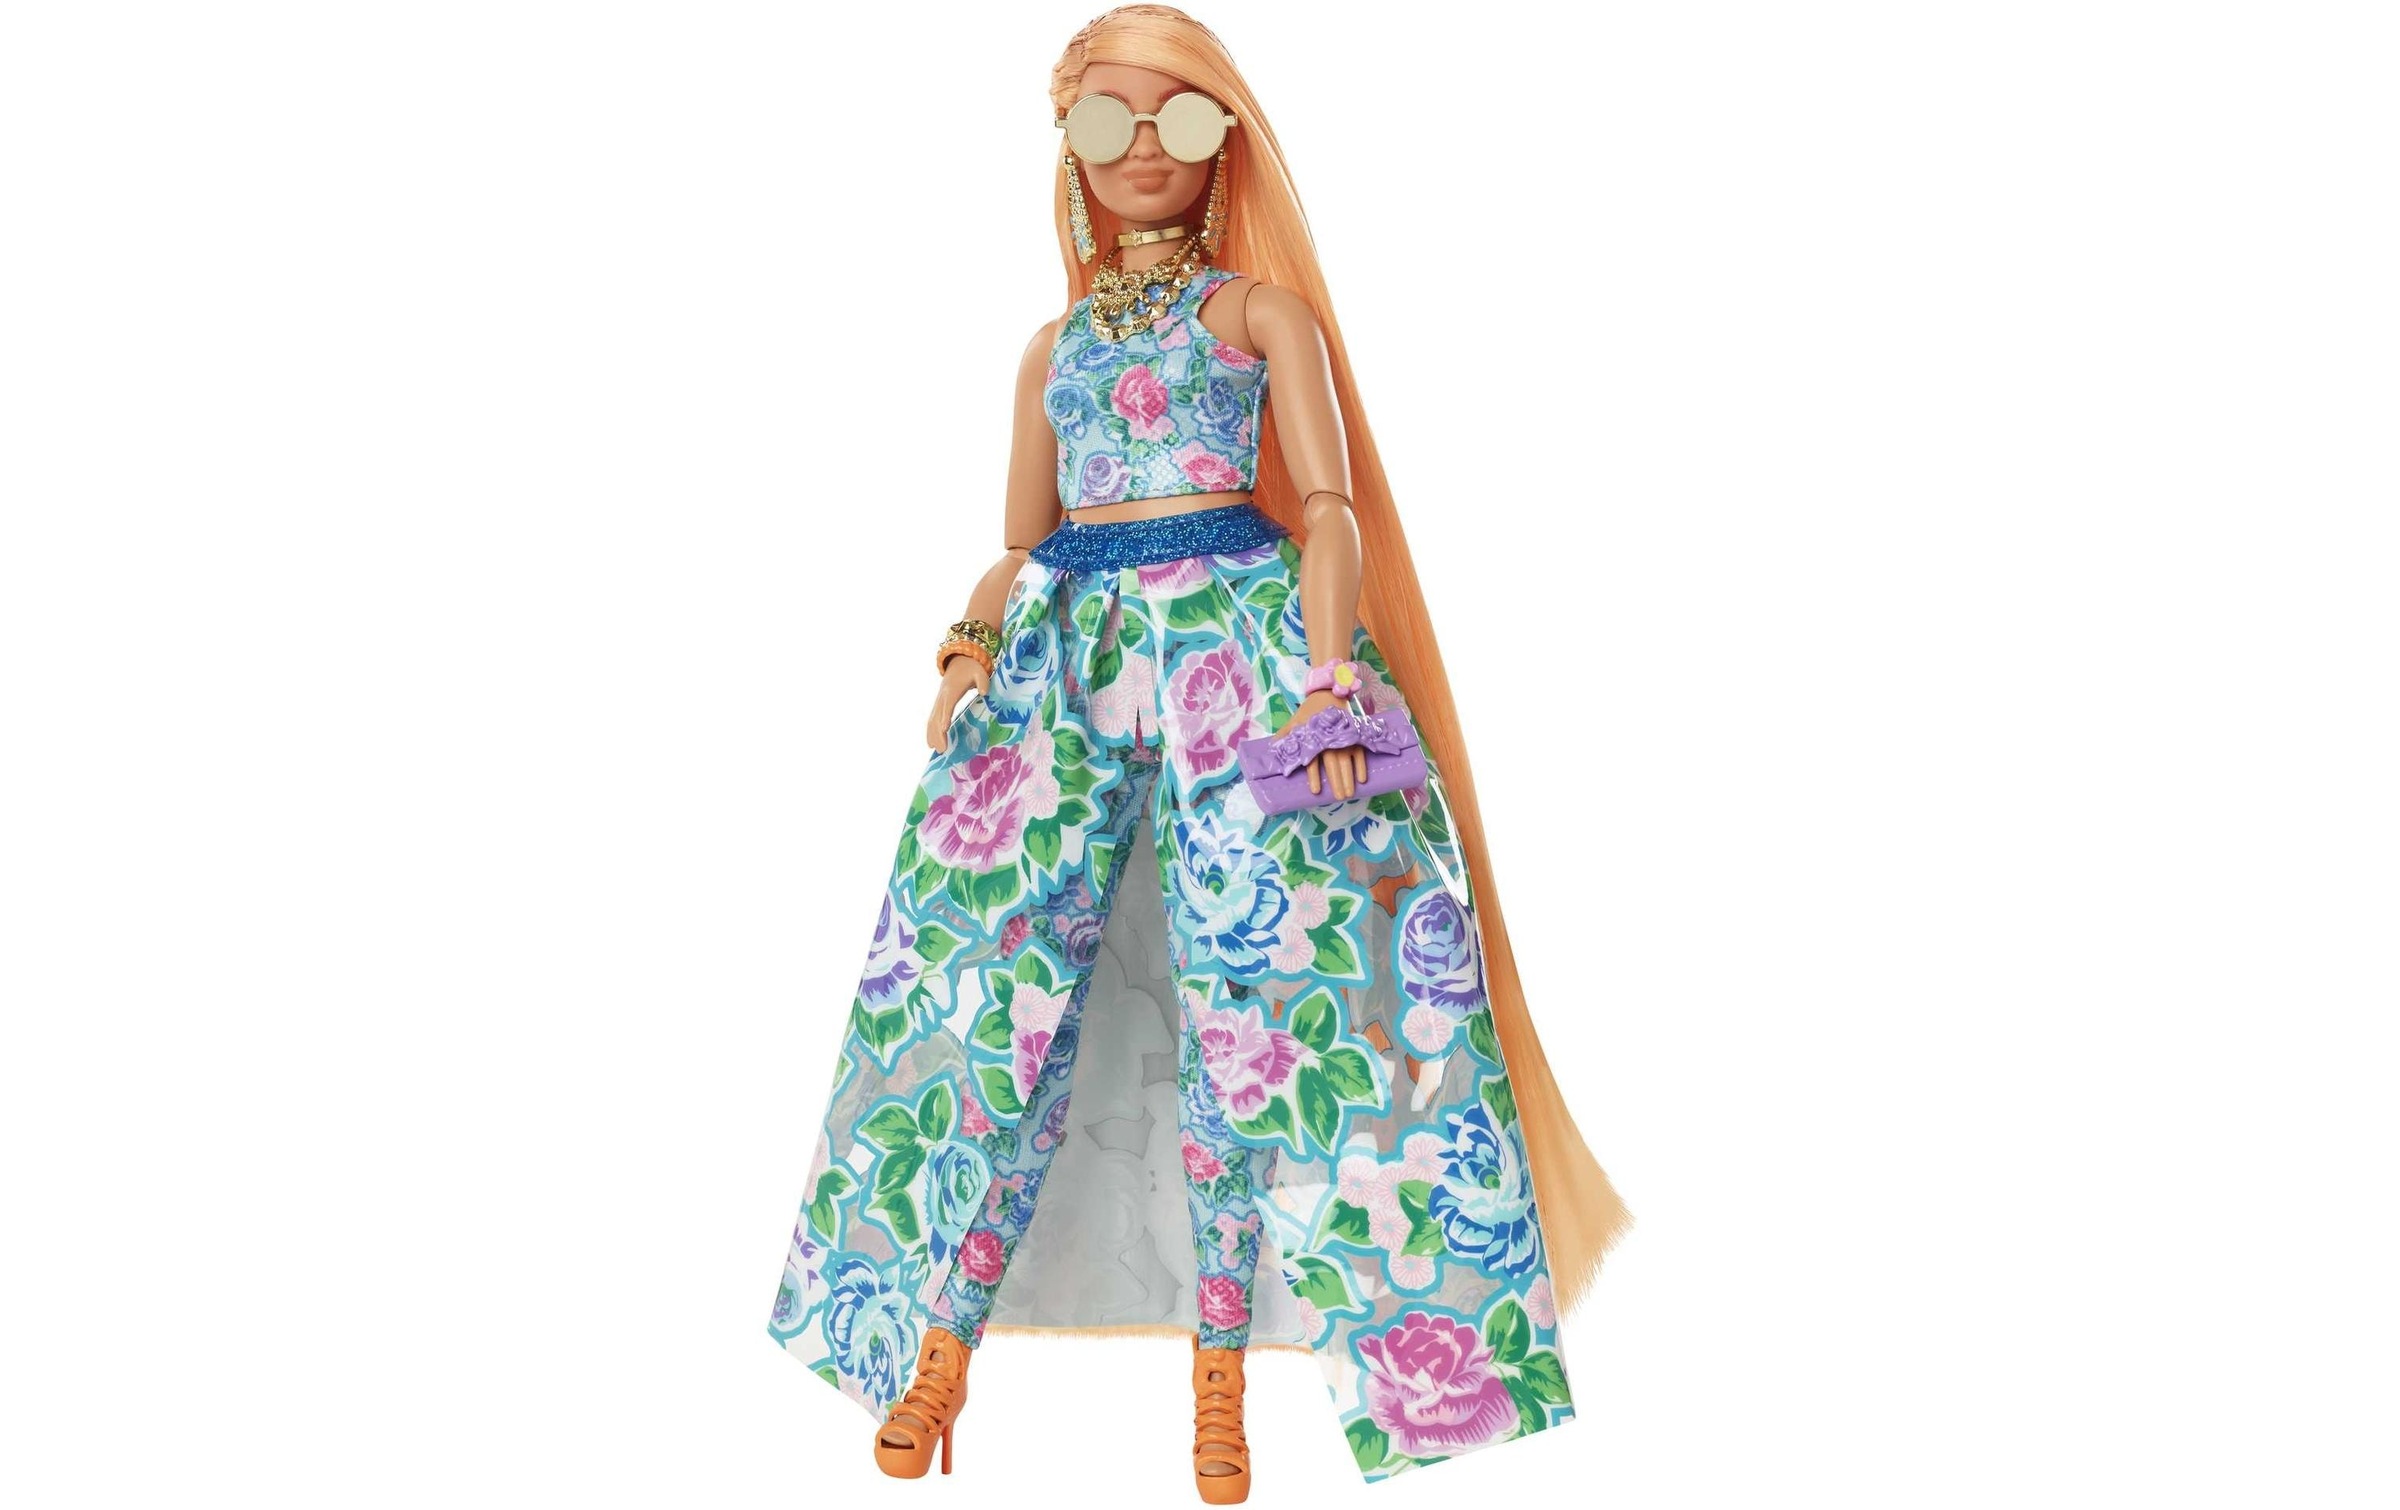 Barbie Anziehpuppe »Barbie Extra Fancy Puppe im blauen Kleid«